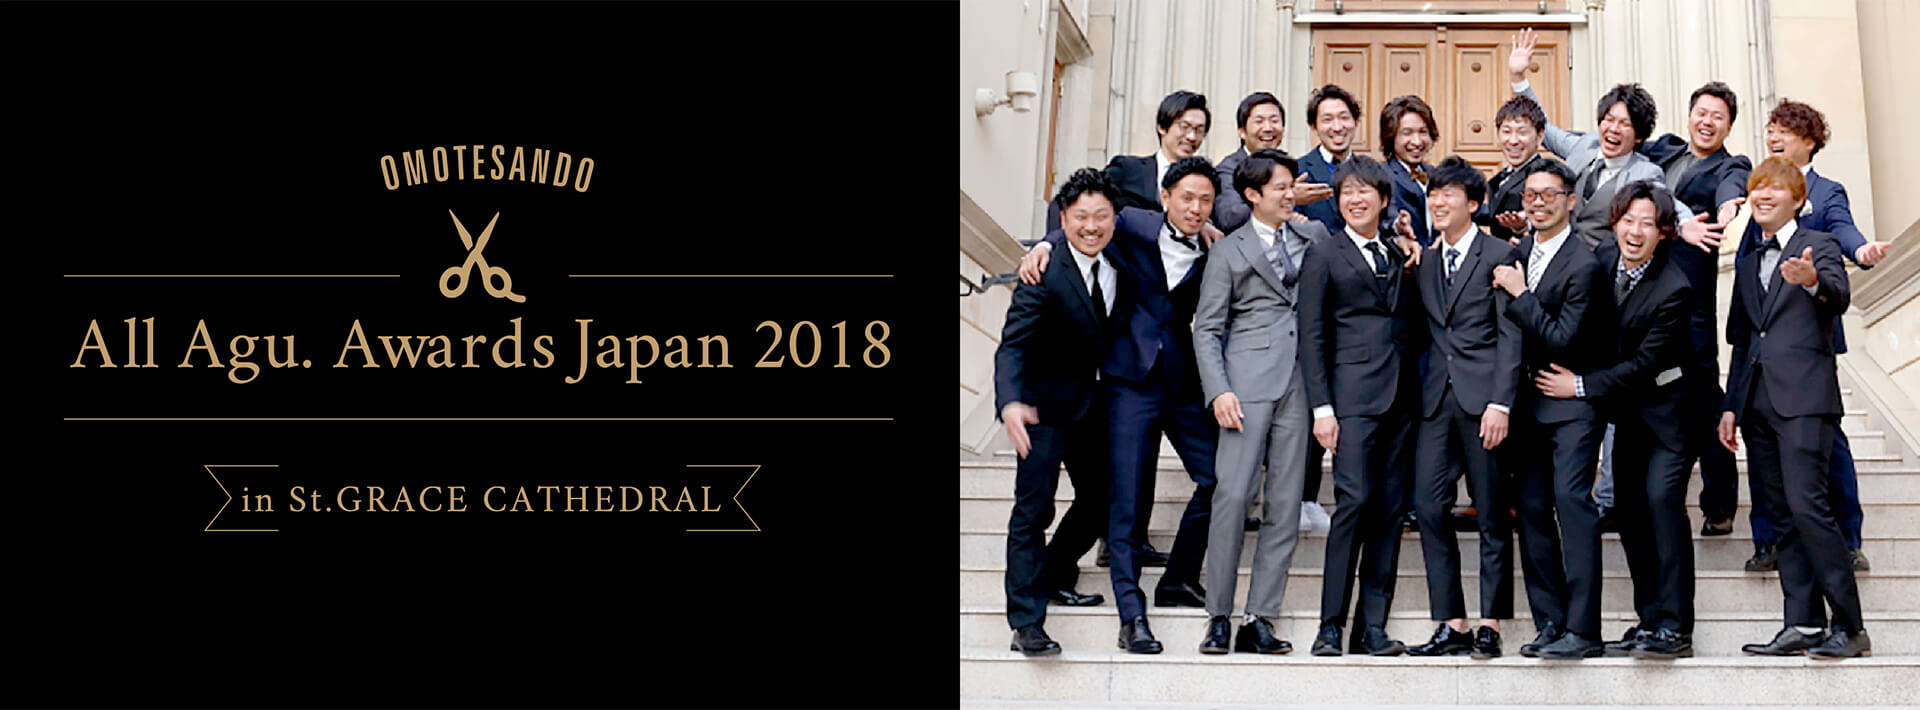 All Agu Awards Japan 2018